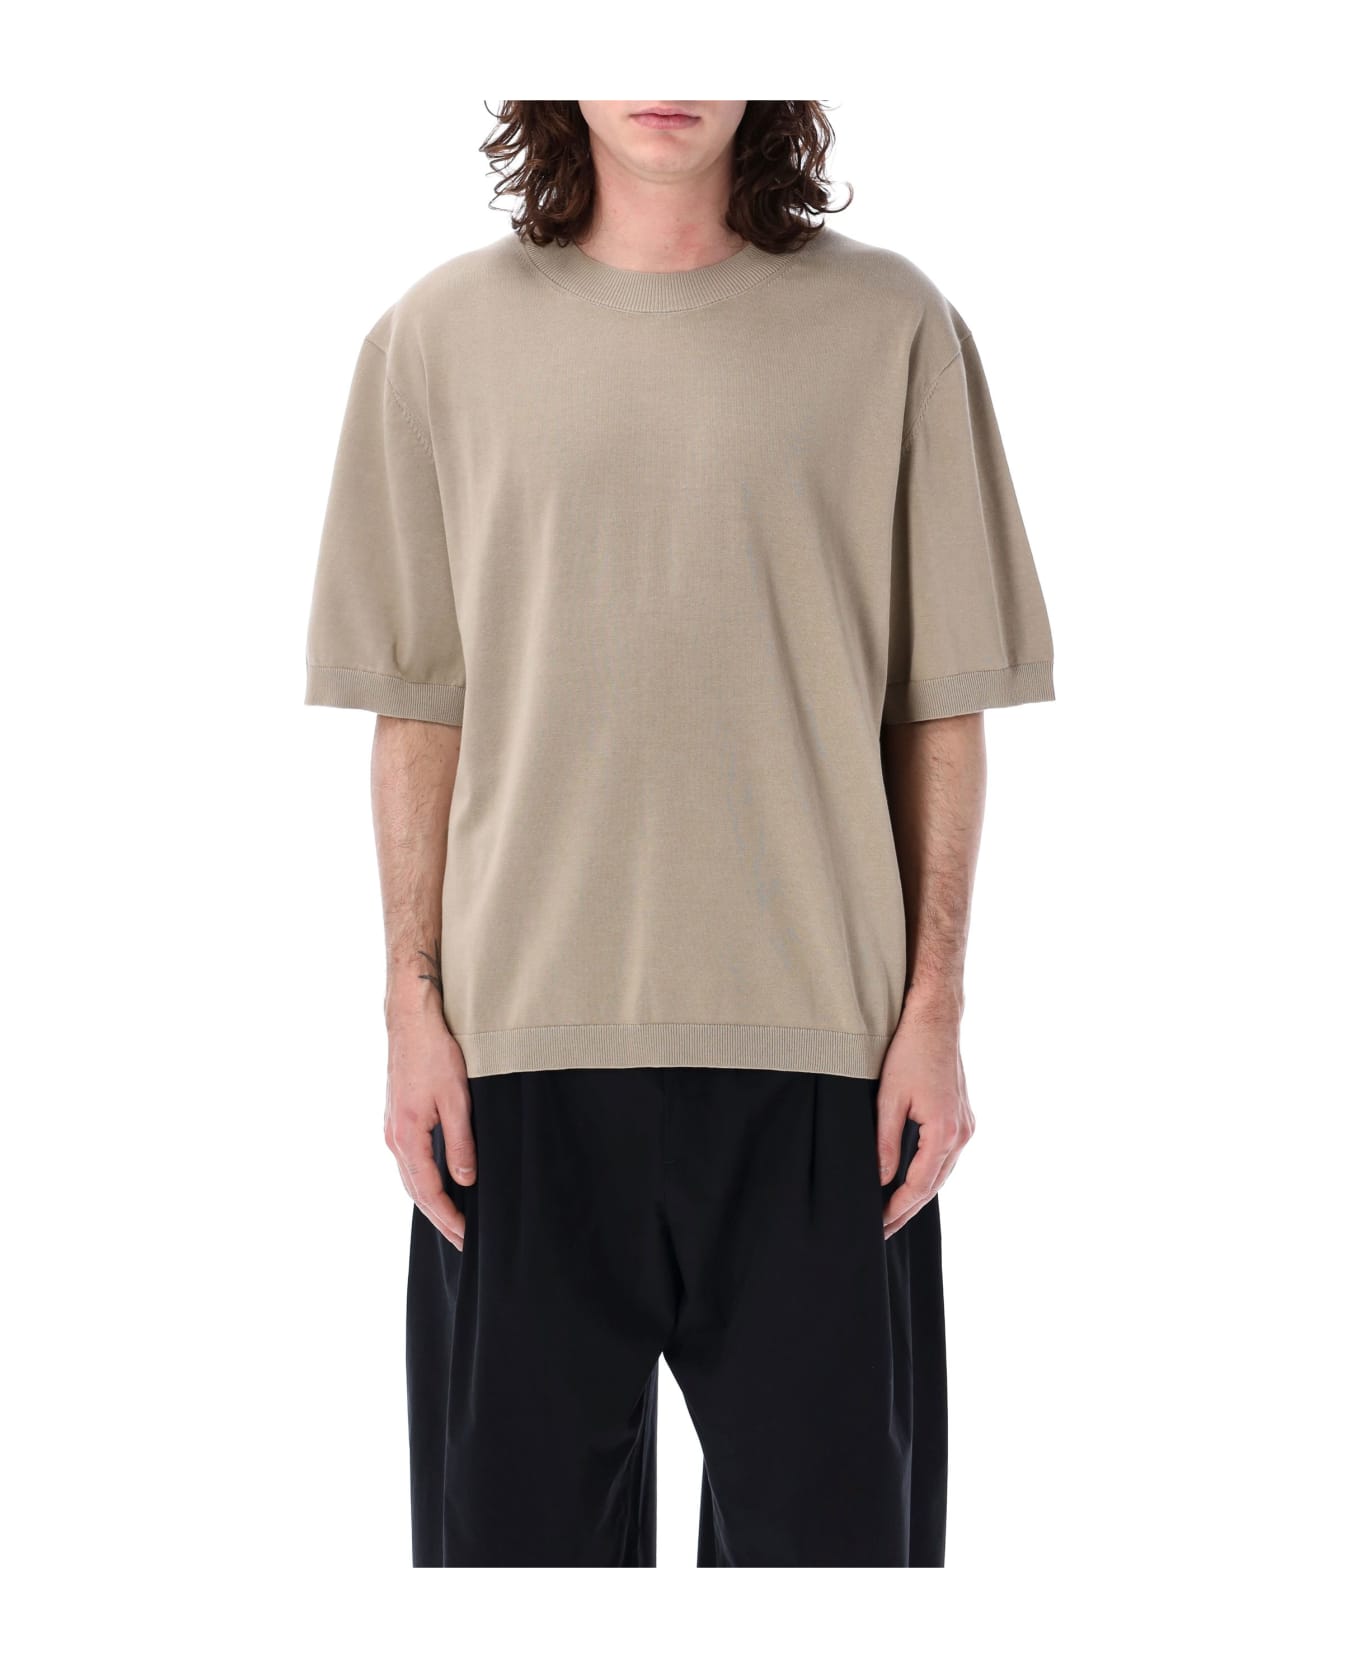 Studio Nicholson Solaris Short Sleeves Sweater - LICHEN